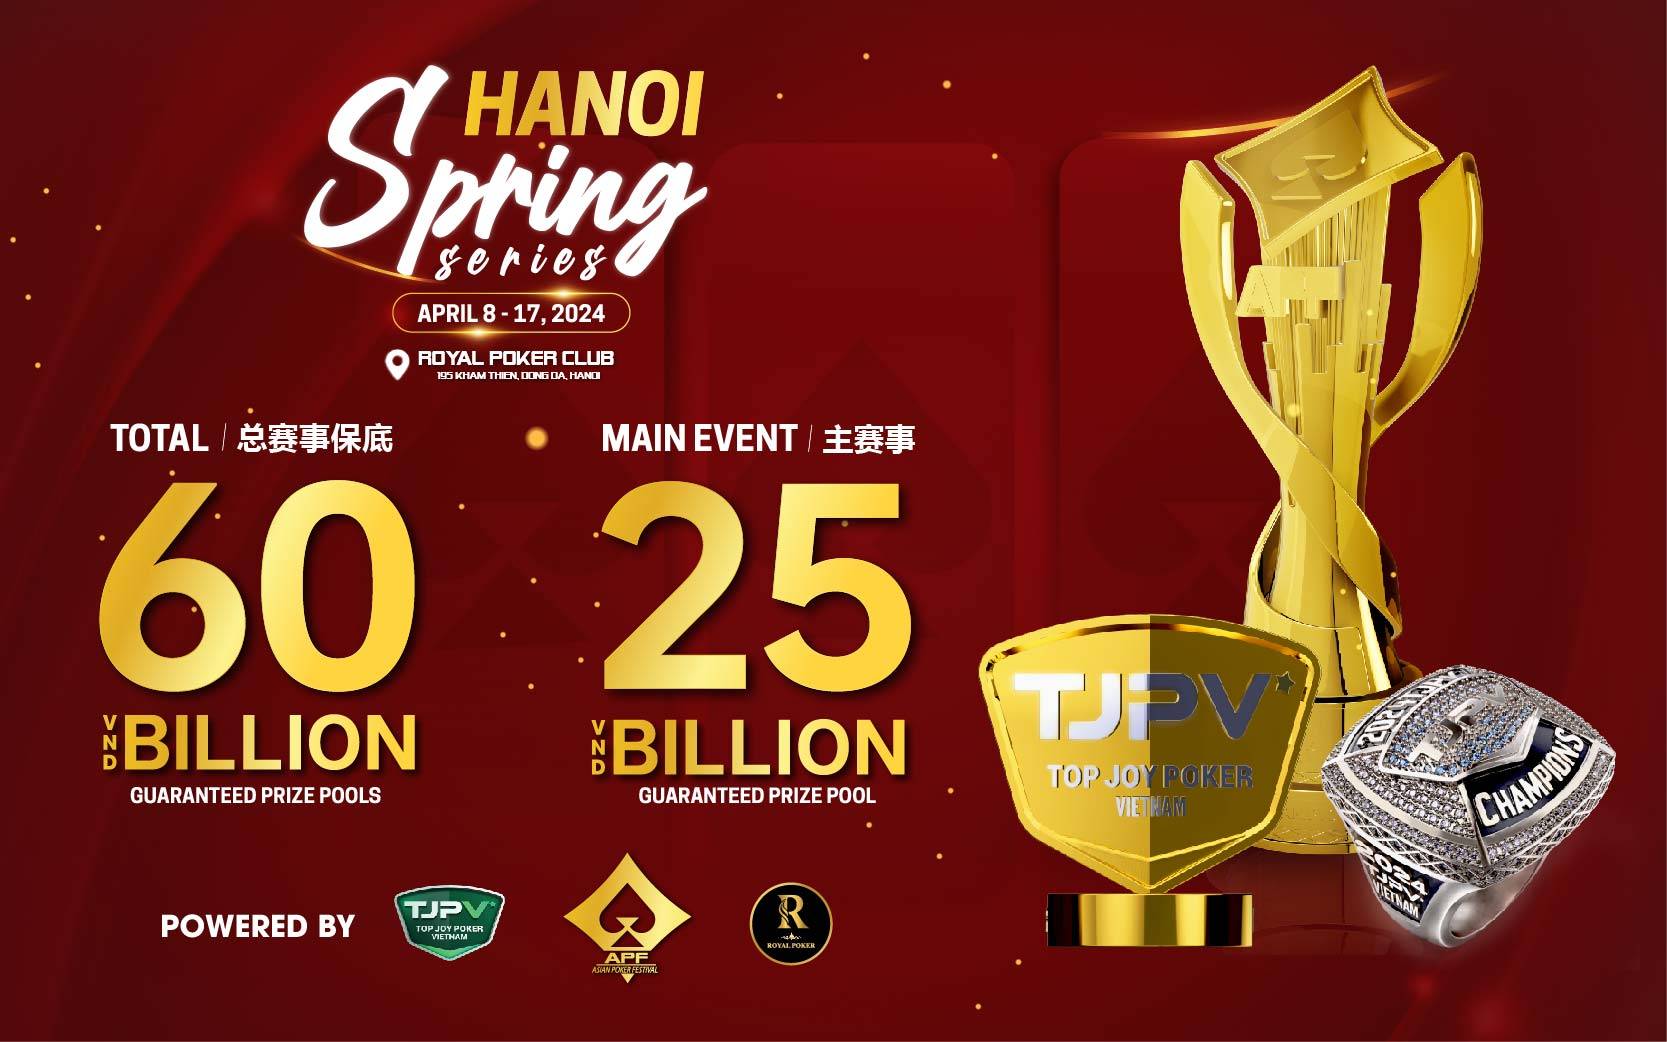 Hanoi-spring-series-2024-apf-tjpv